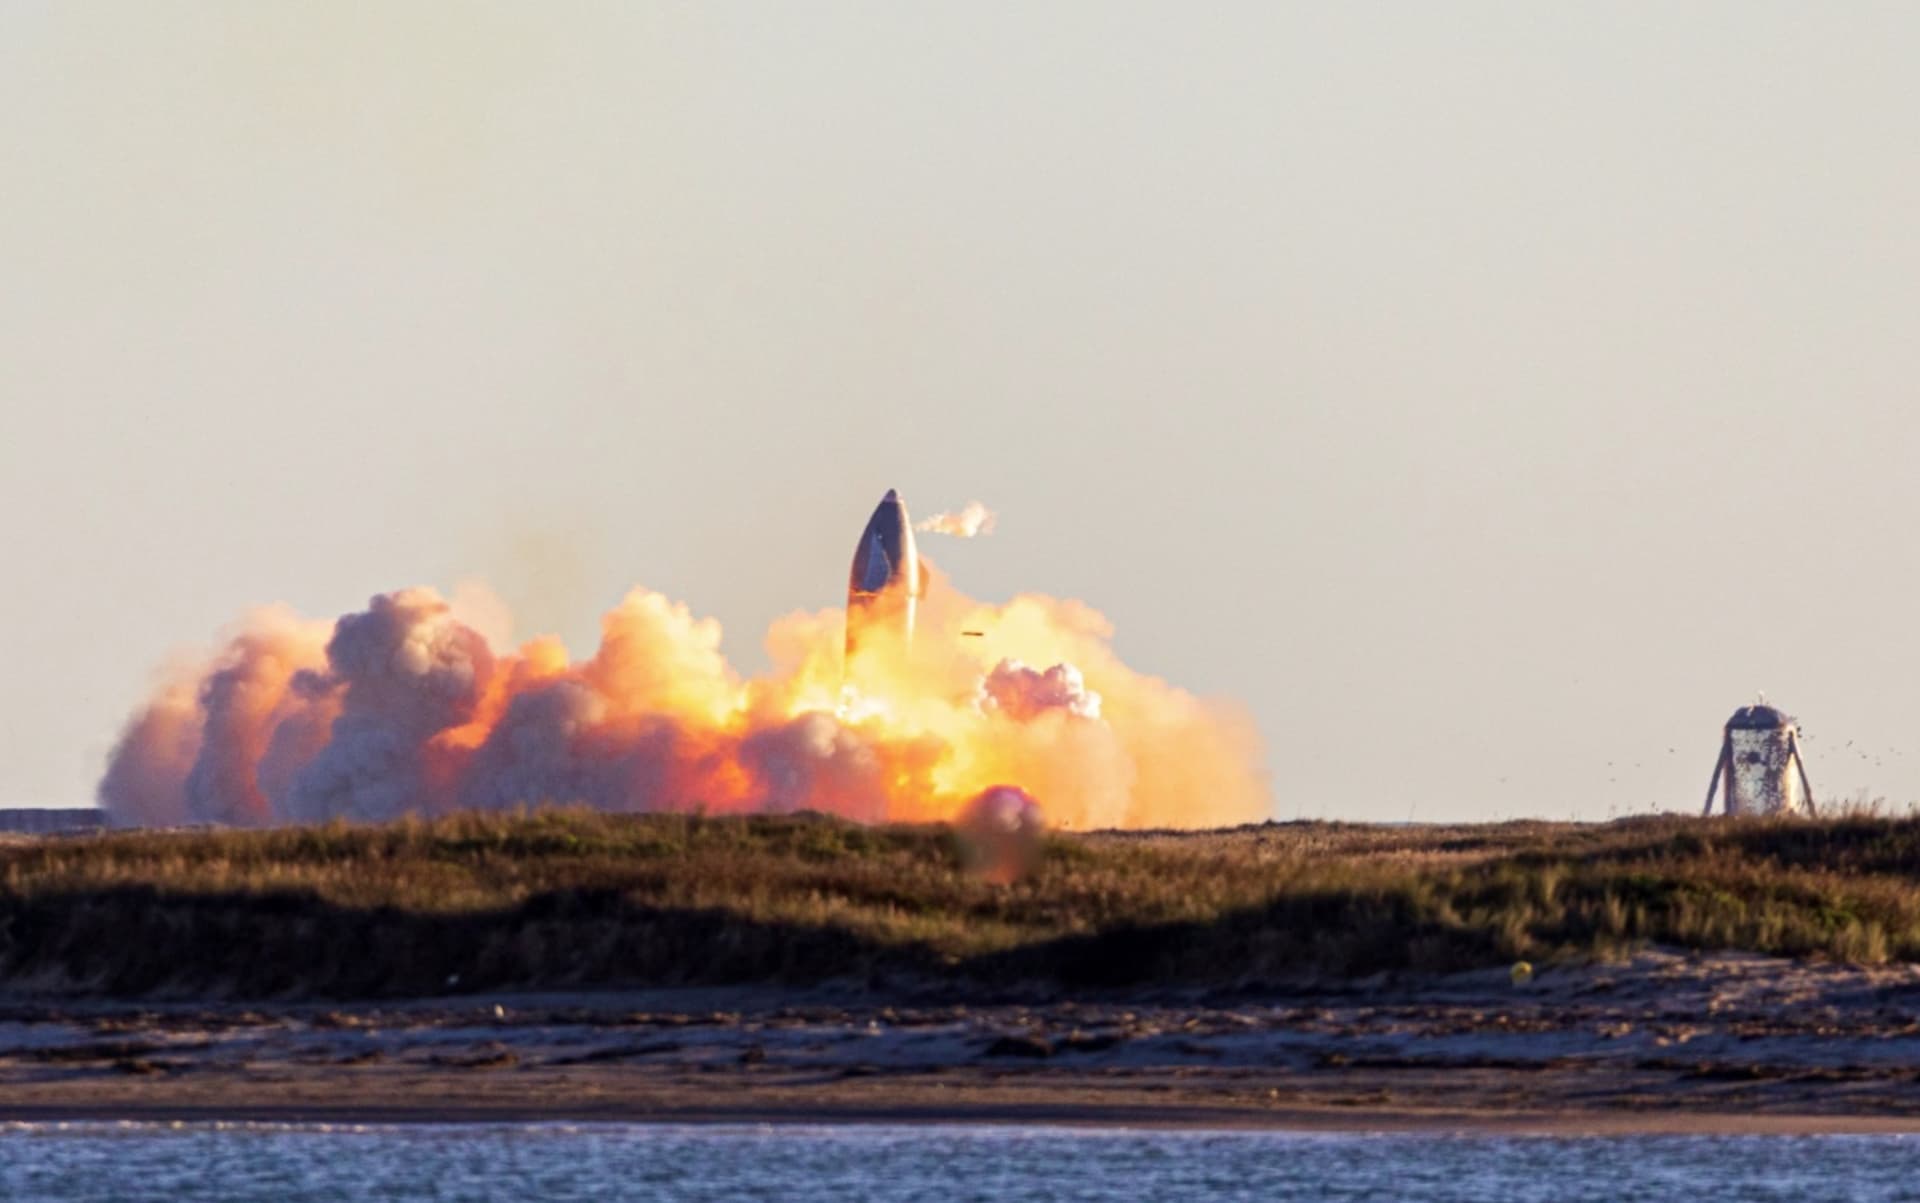 Prototyp rakety společnosti SpaceX se při přistání roztrhl (Foto: TESLARATI/Richard Angle)